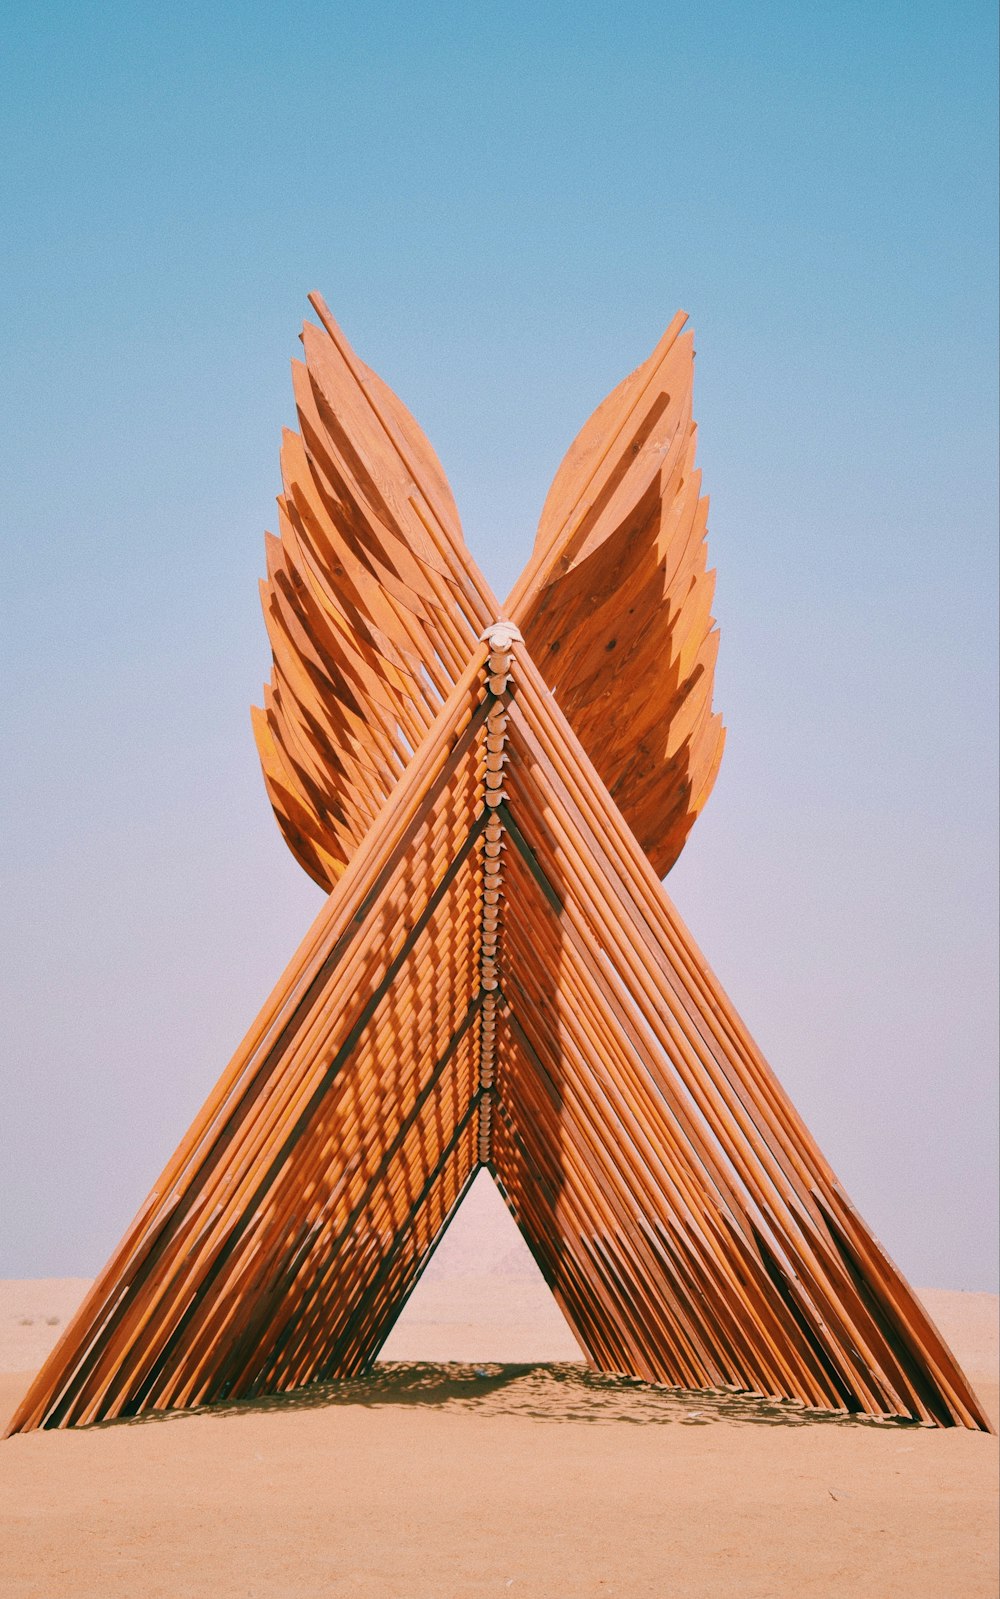 uma escultura feita de varas de madeira no deserto